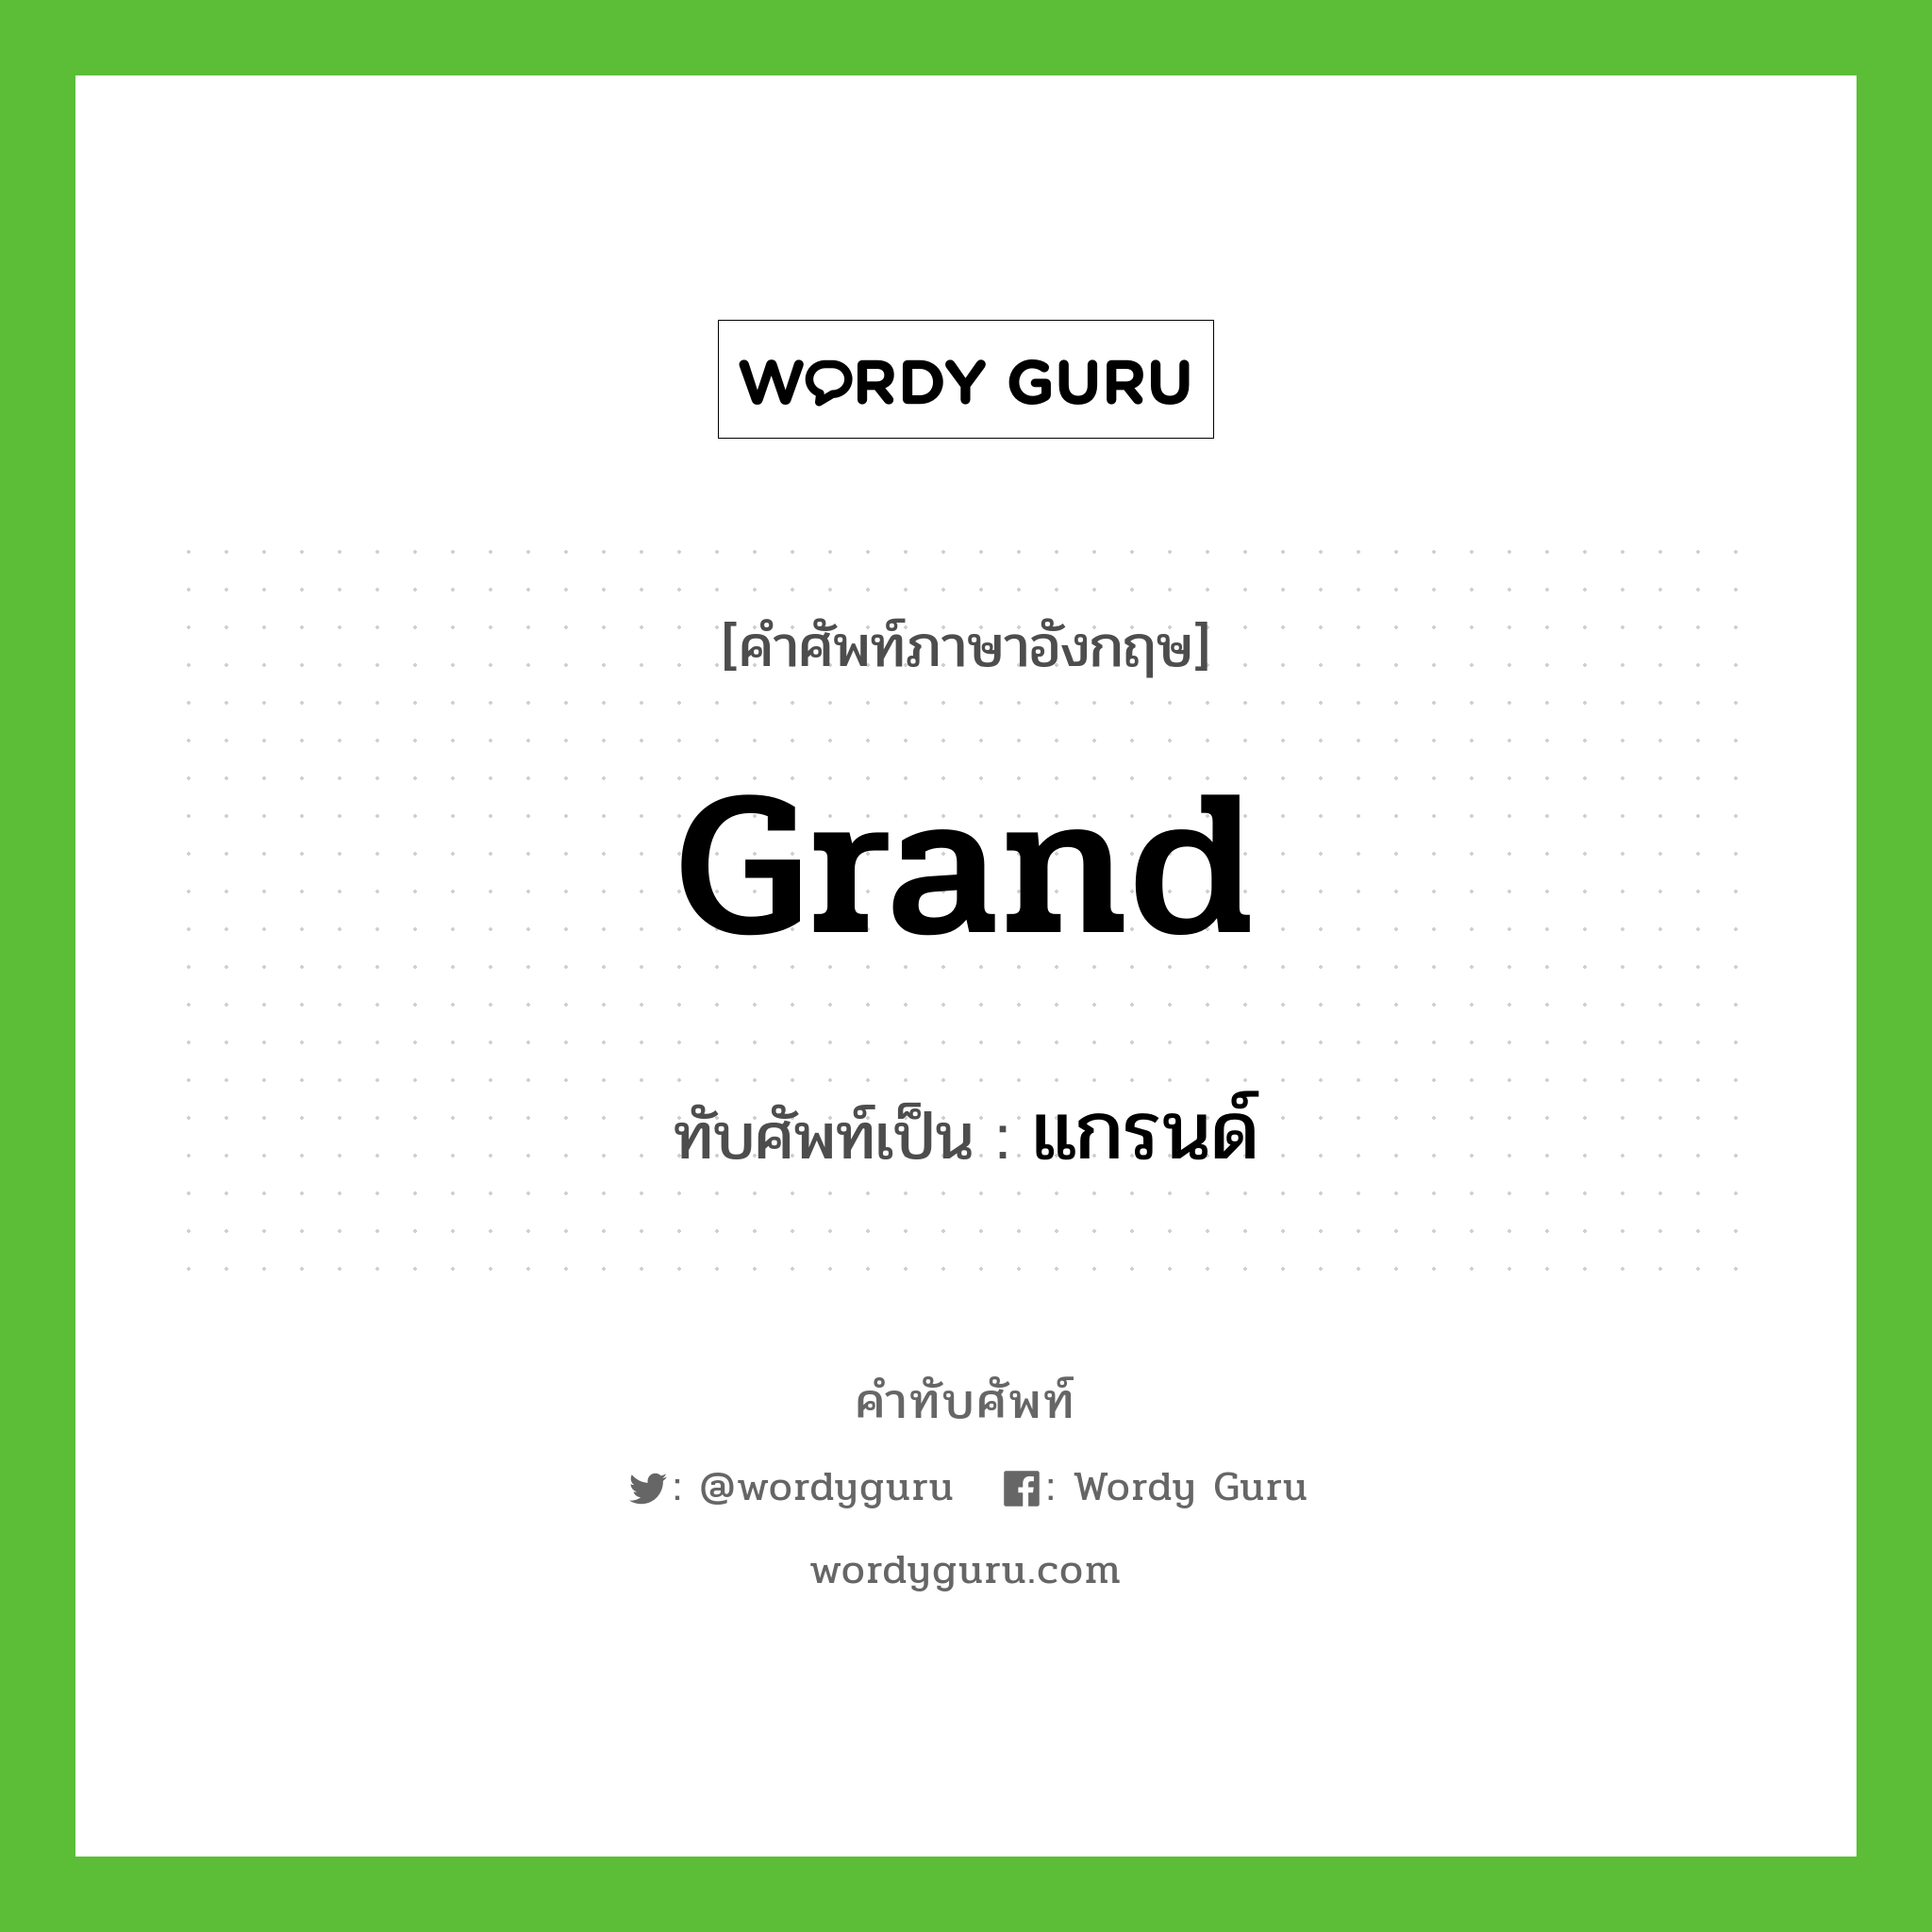 grand เขียนเป็นคำไทยว่าอะไร?, คำศัพท์ภาษาอังกฤษ grand ทับศัพท์เป็น แกรนด์